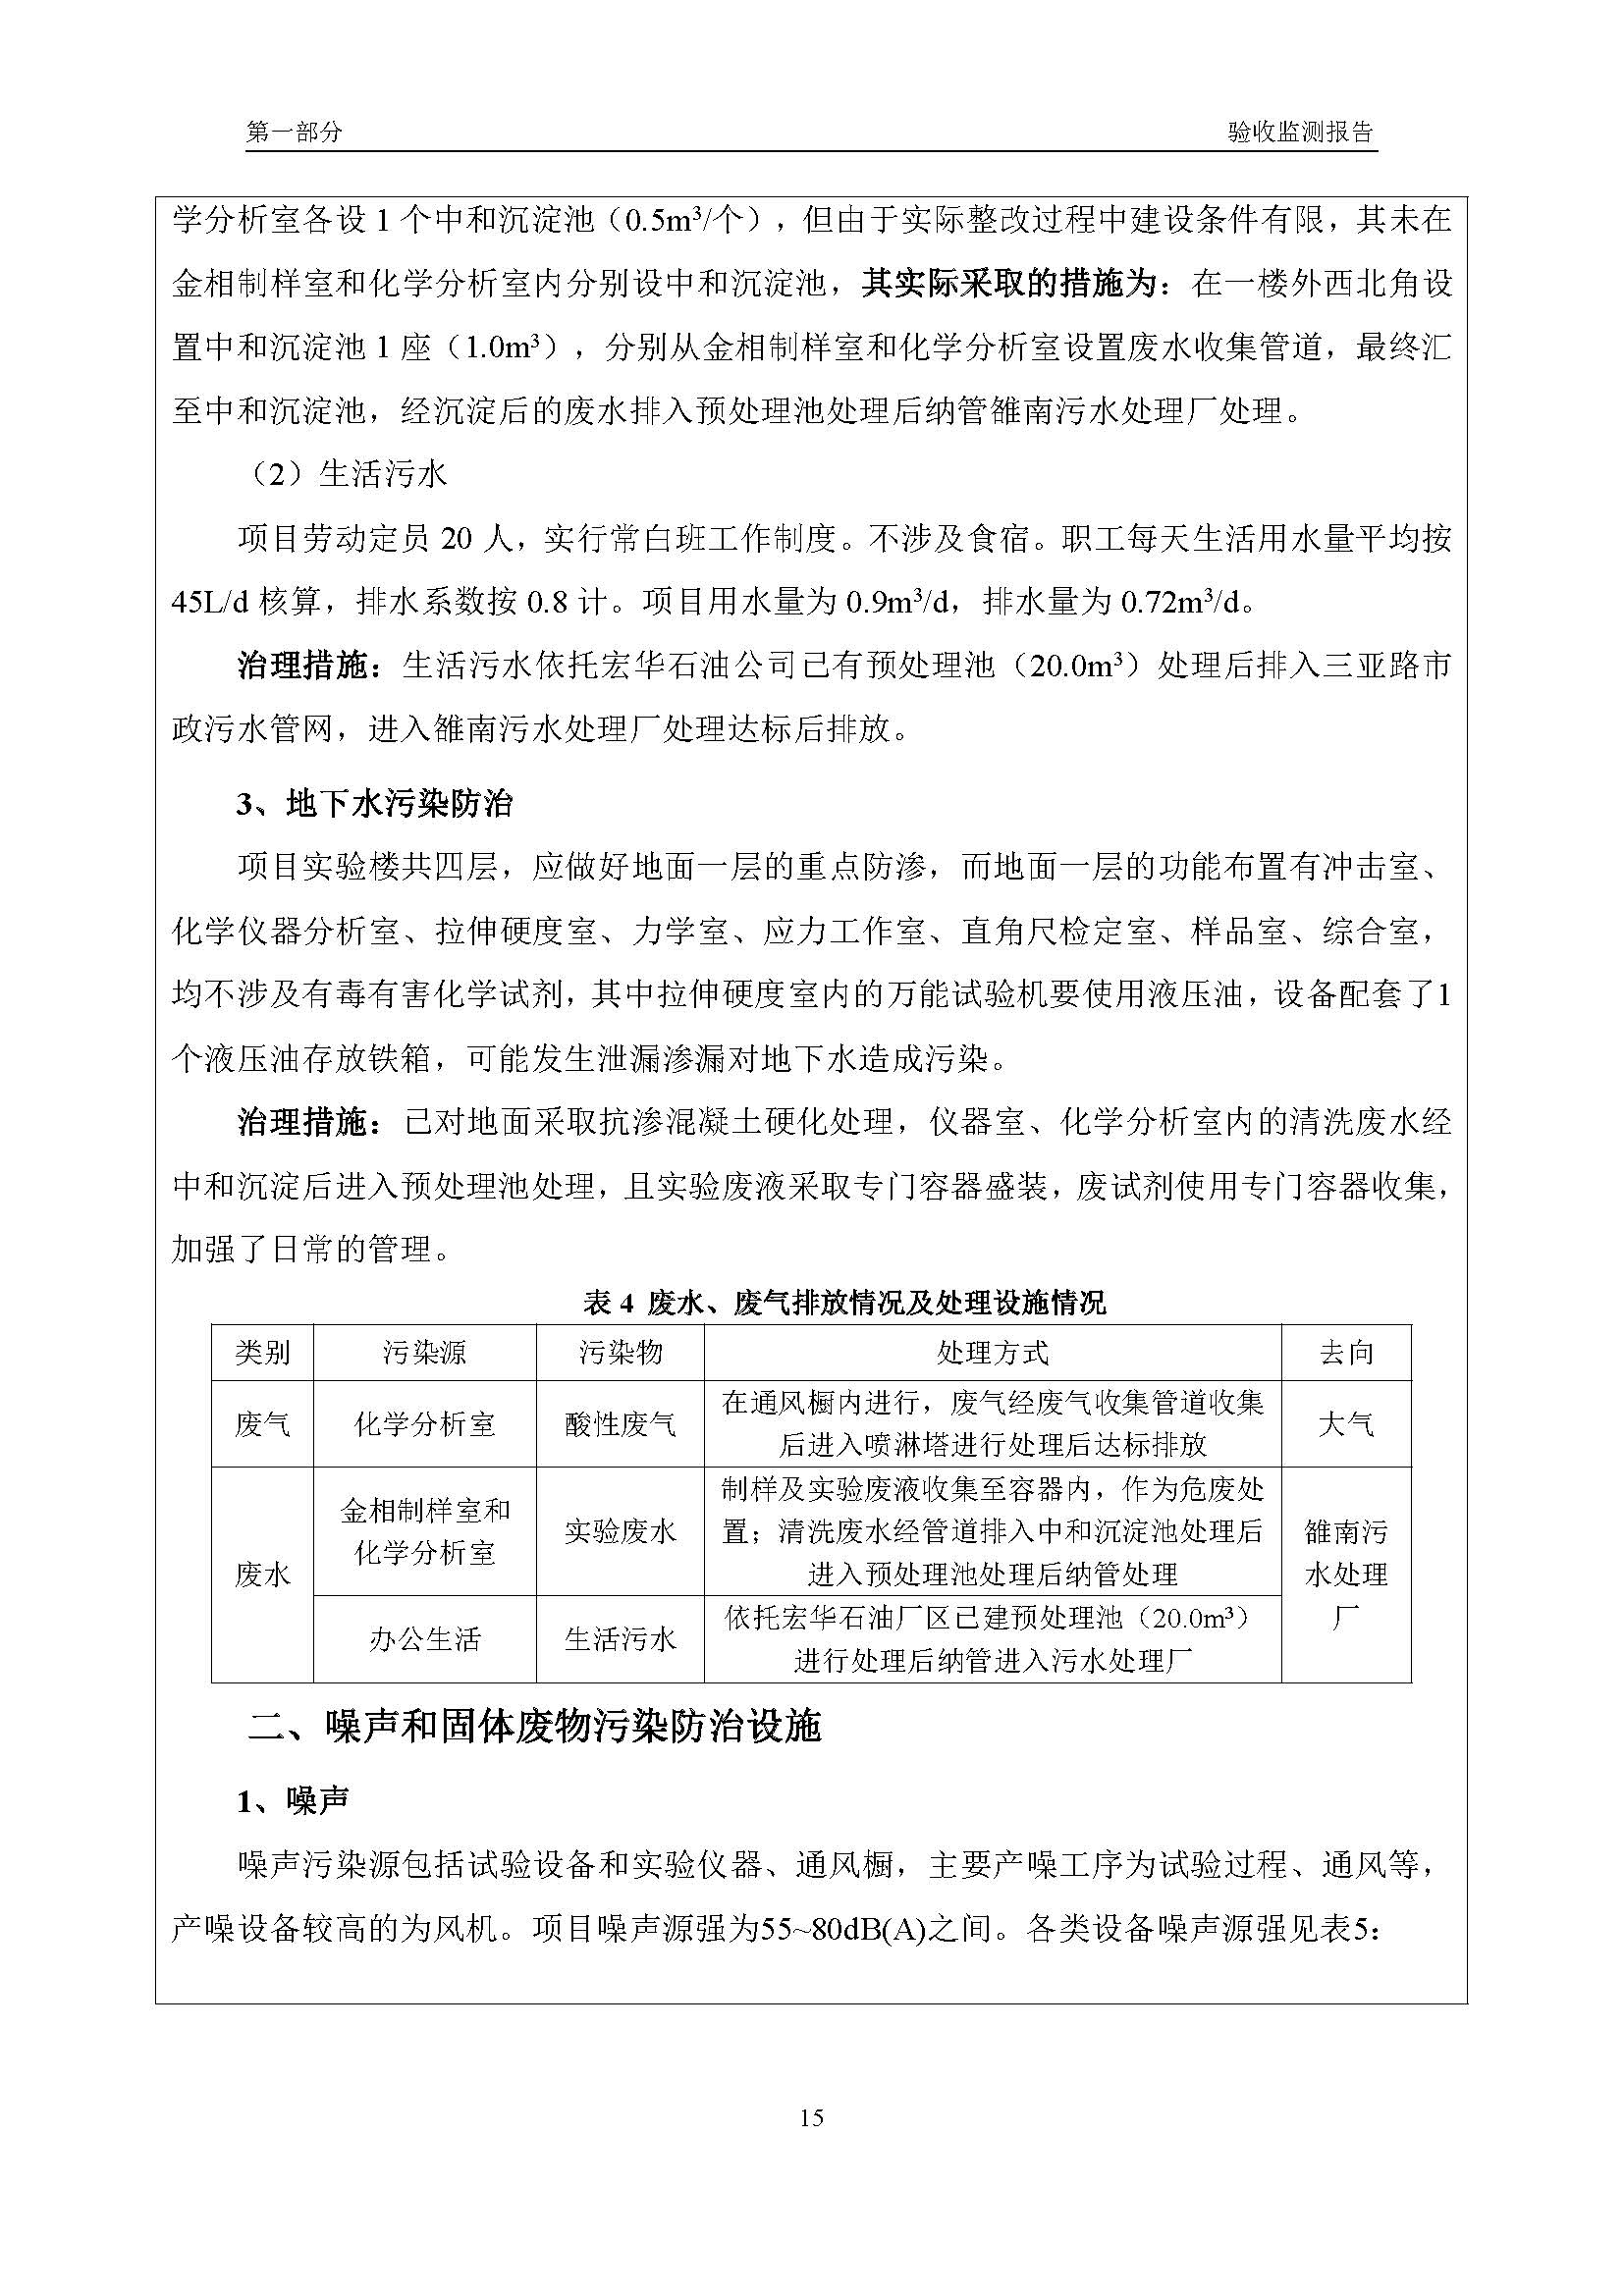 汉正检测环评验收报告 2018.05.31_页面_17.jpg